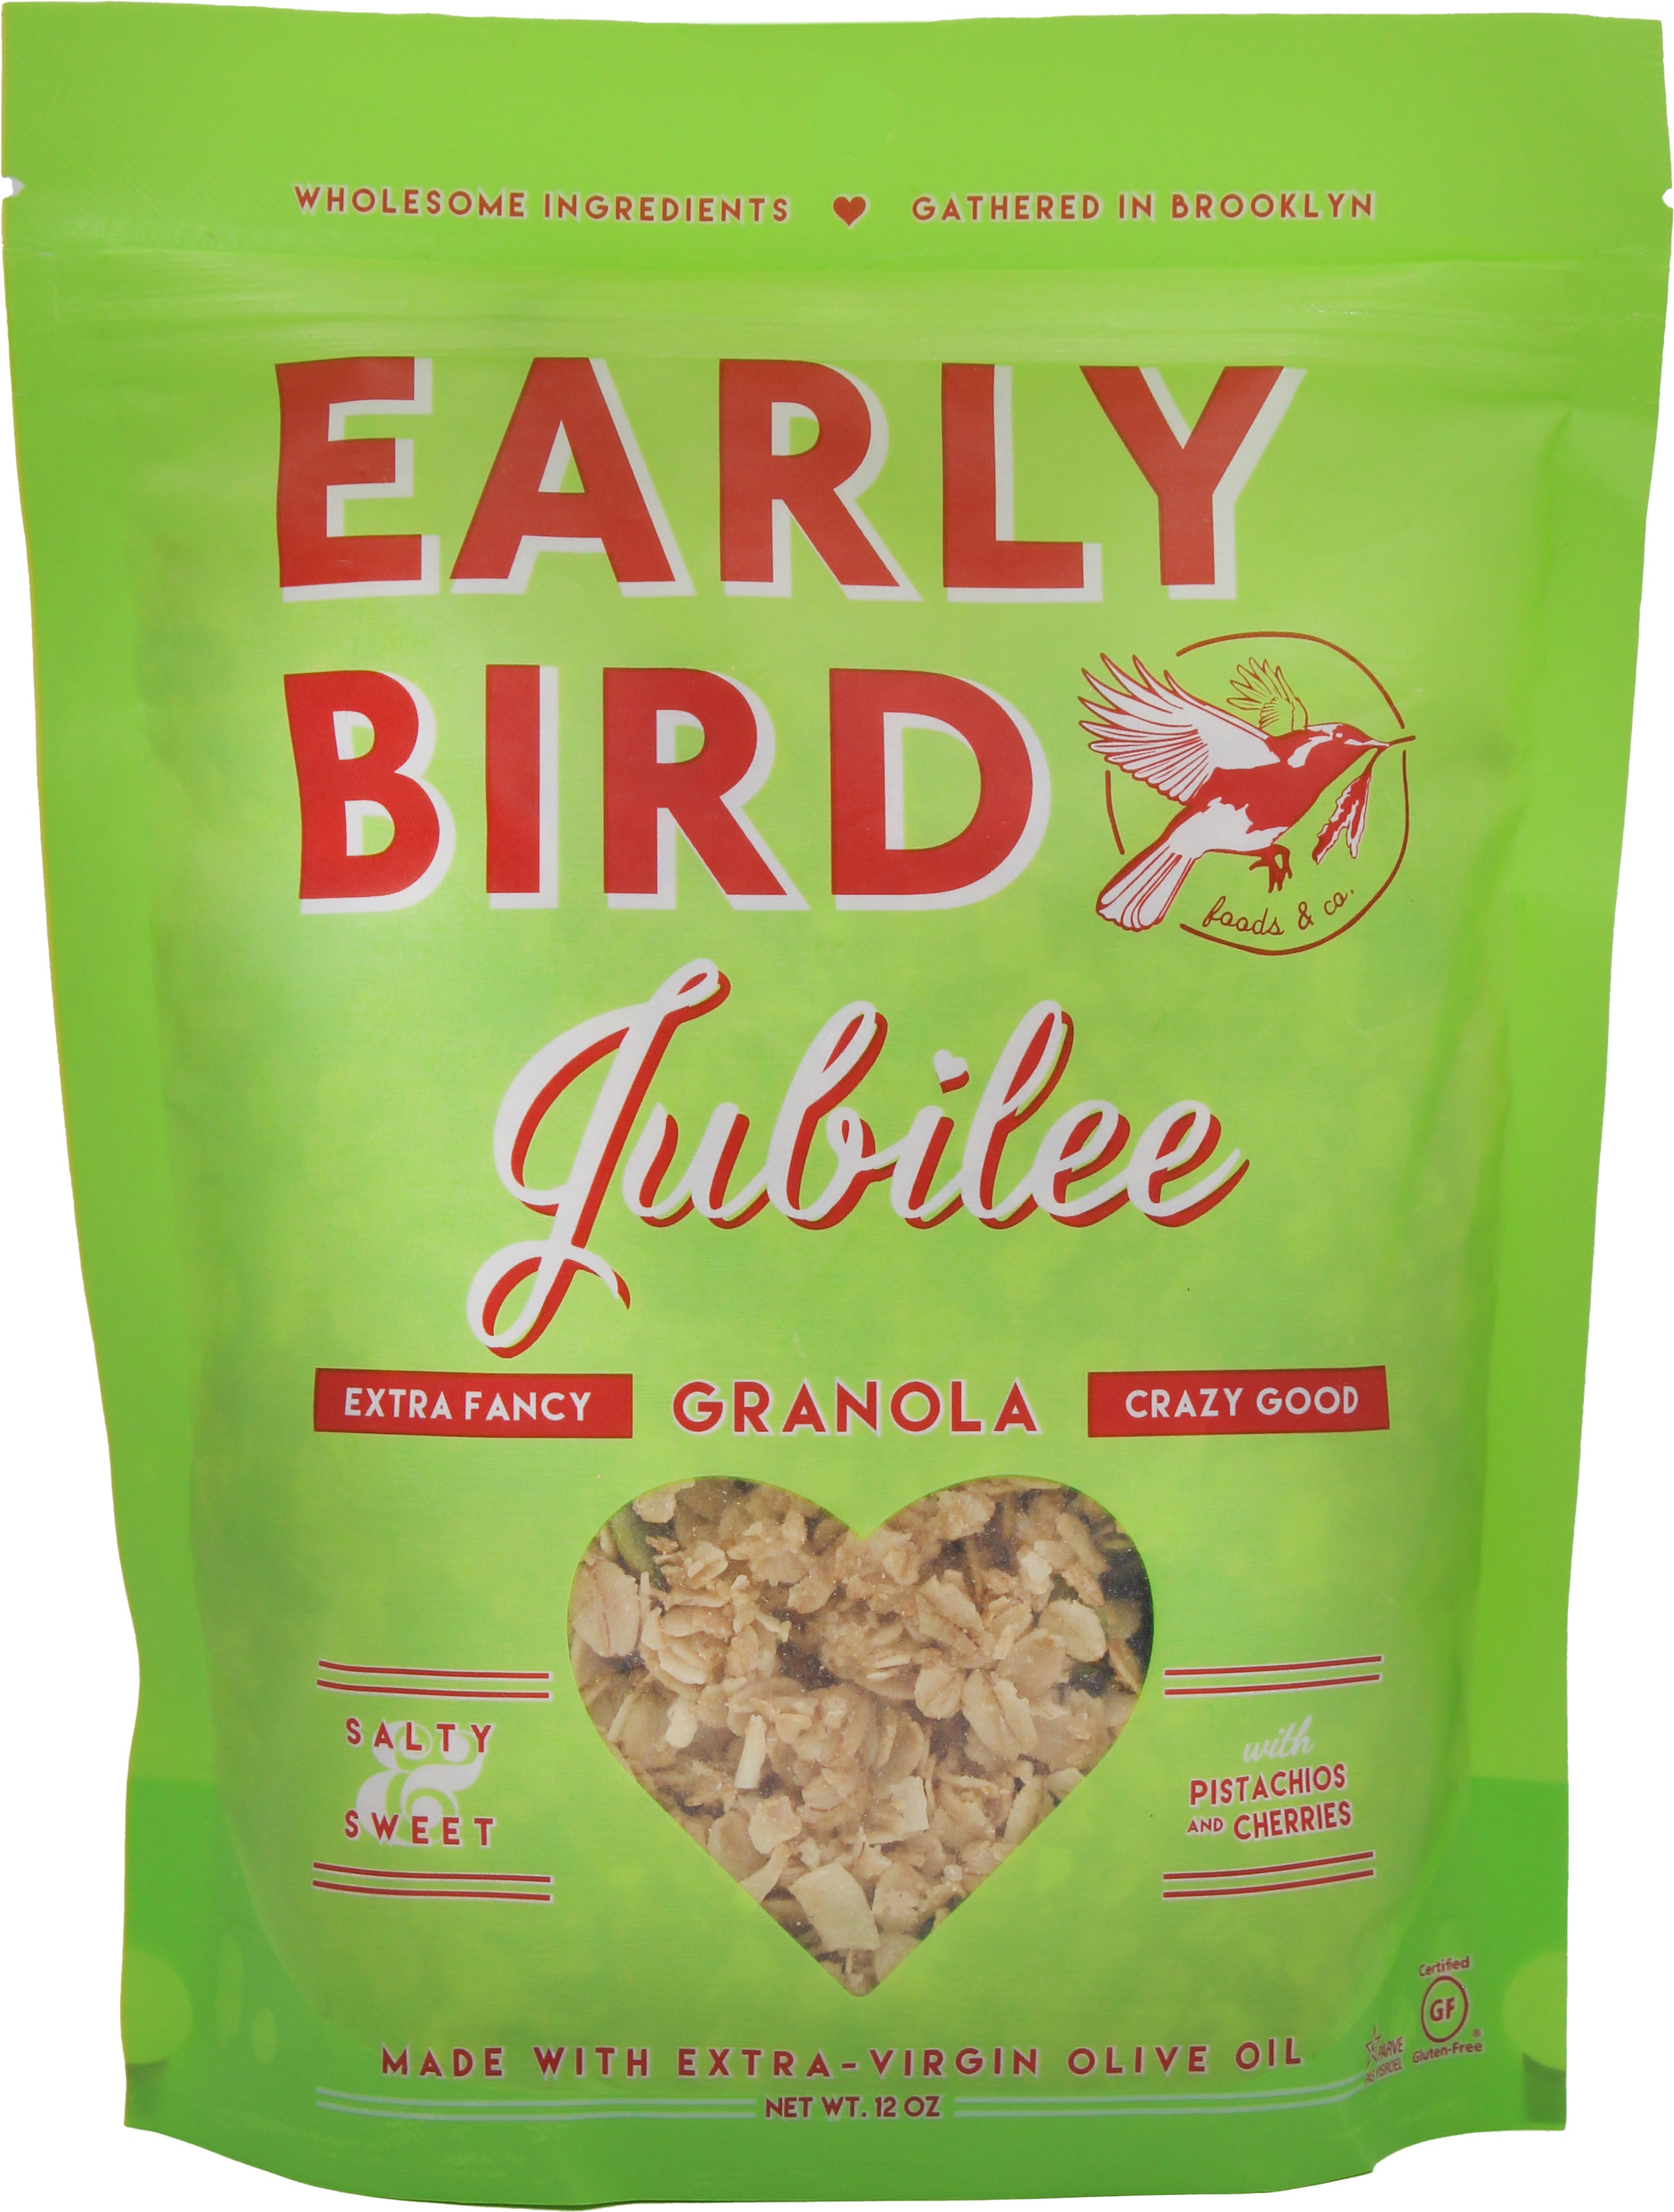 FARMHAND'S CHOICE – Early Bird Foods & Co.